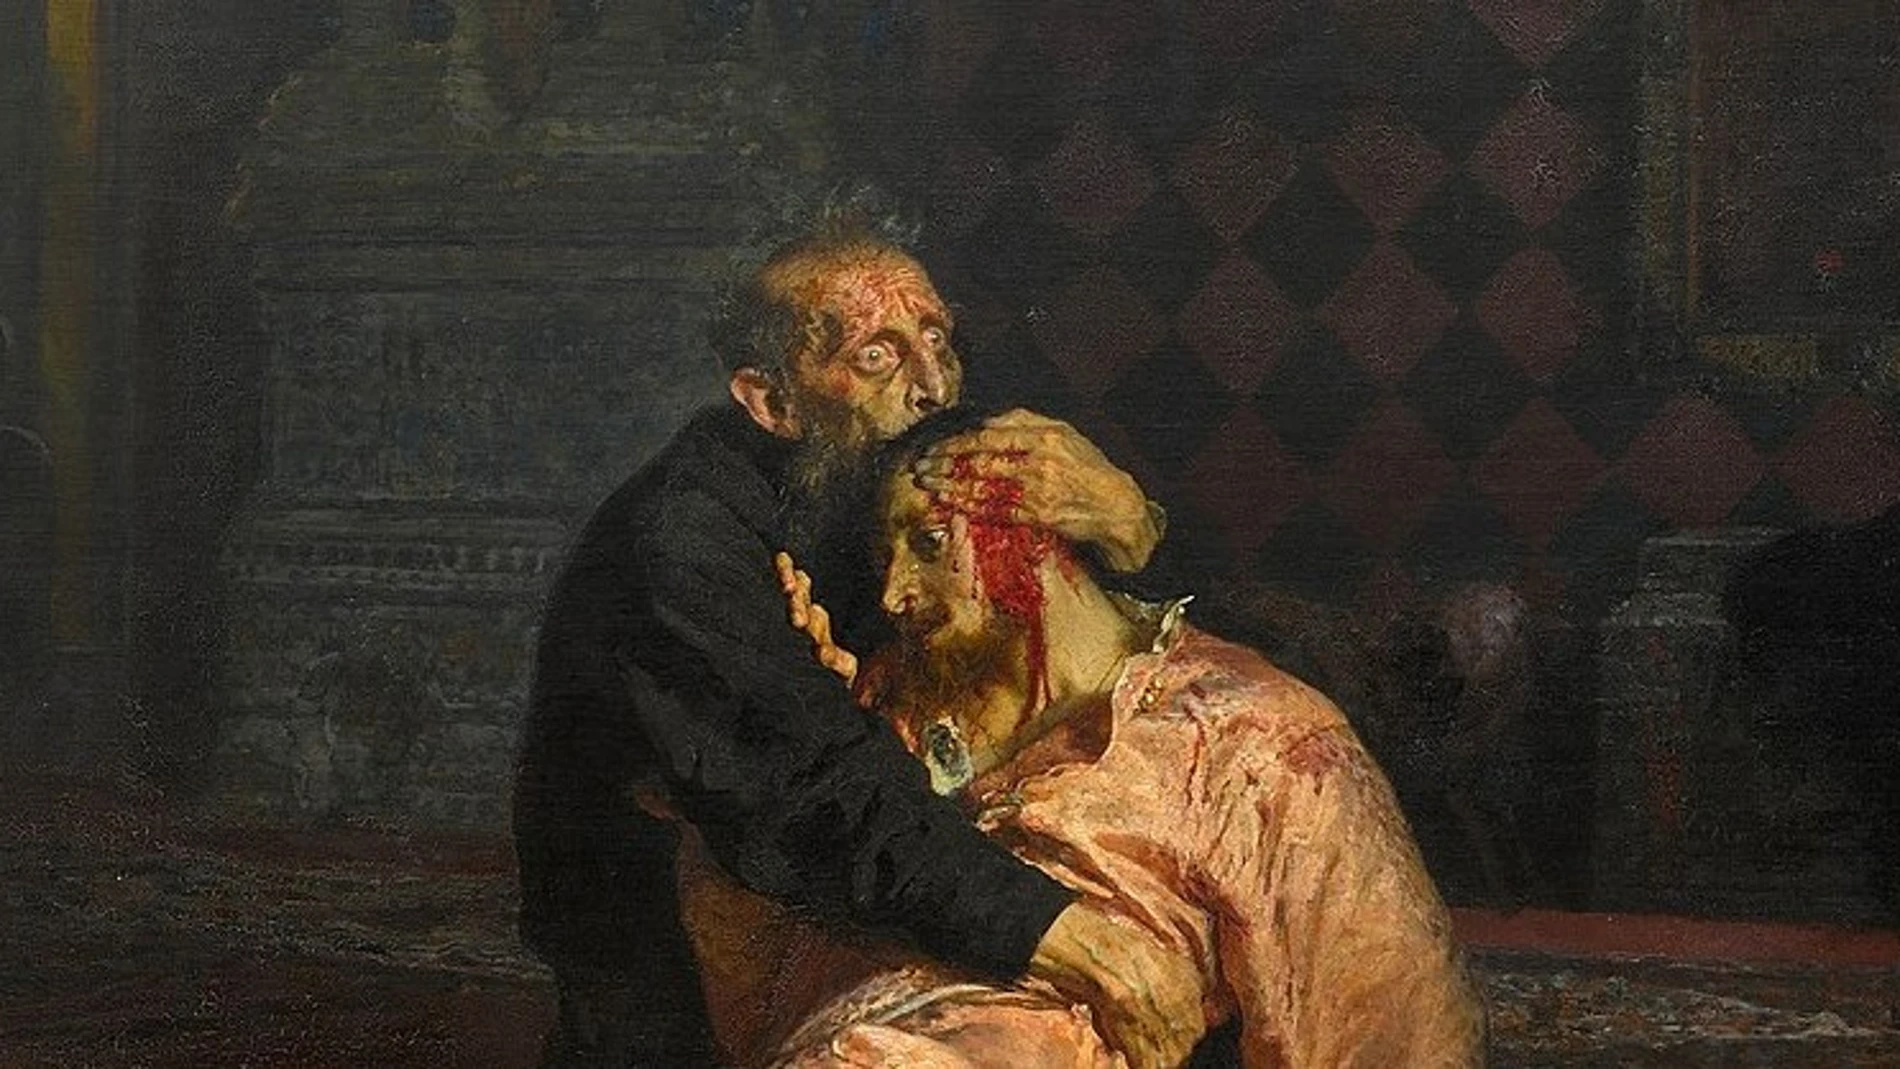 Detalle del cuadro "Iván el Terrible y su hijo".